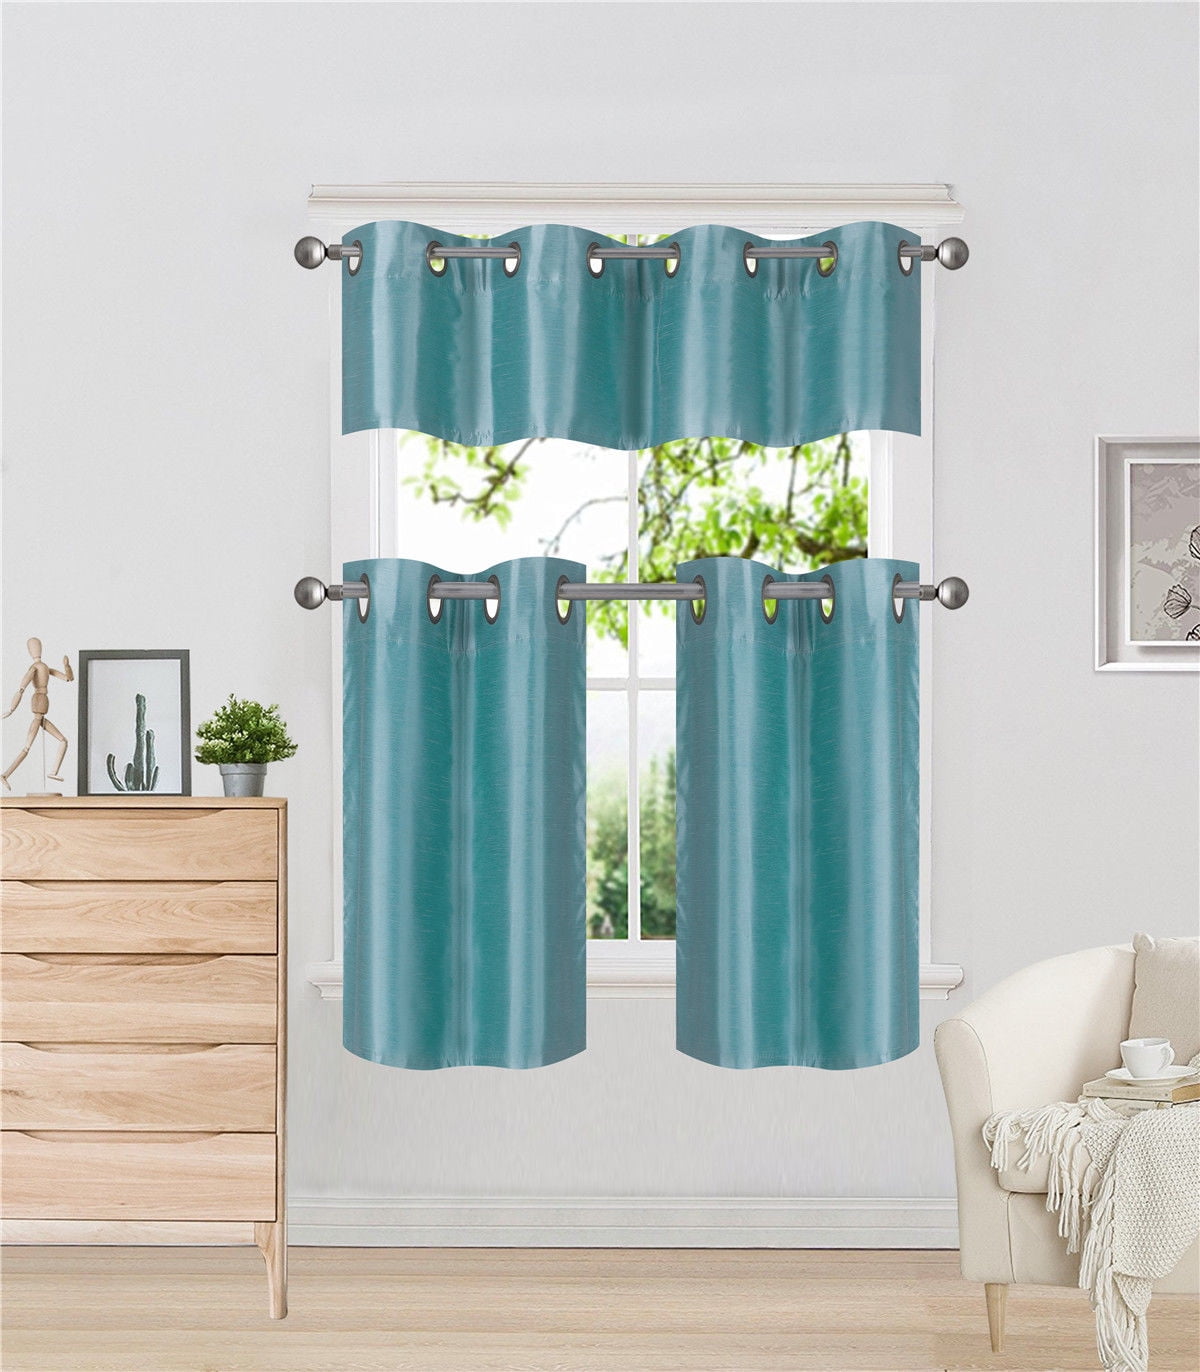 3 Pcs Solid Color Blackout Short Curtain Drape Valance Panels Kitchen Room Decor 